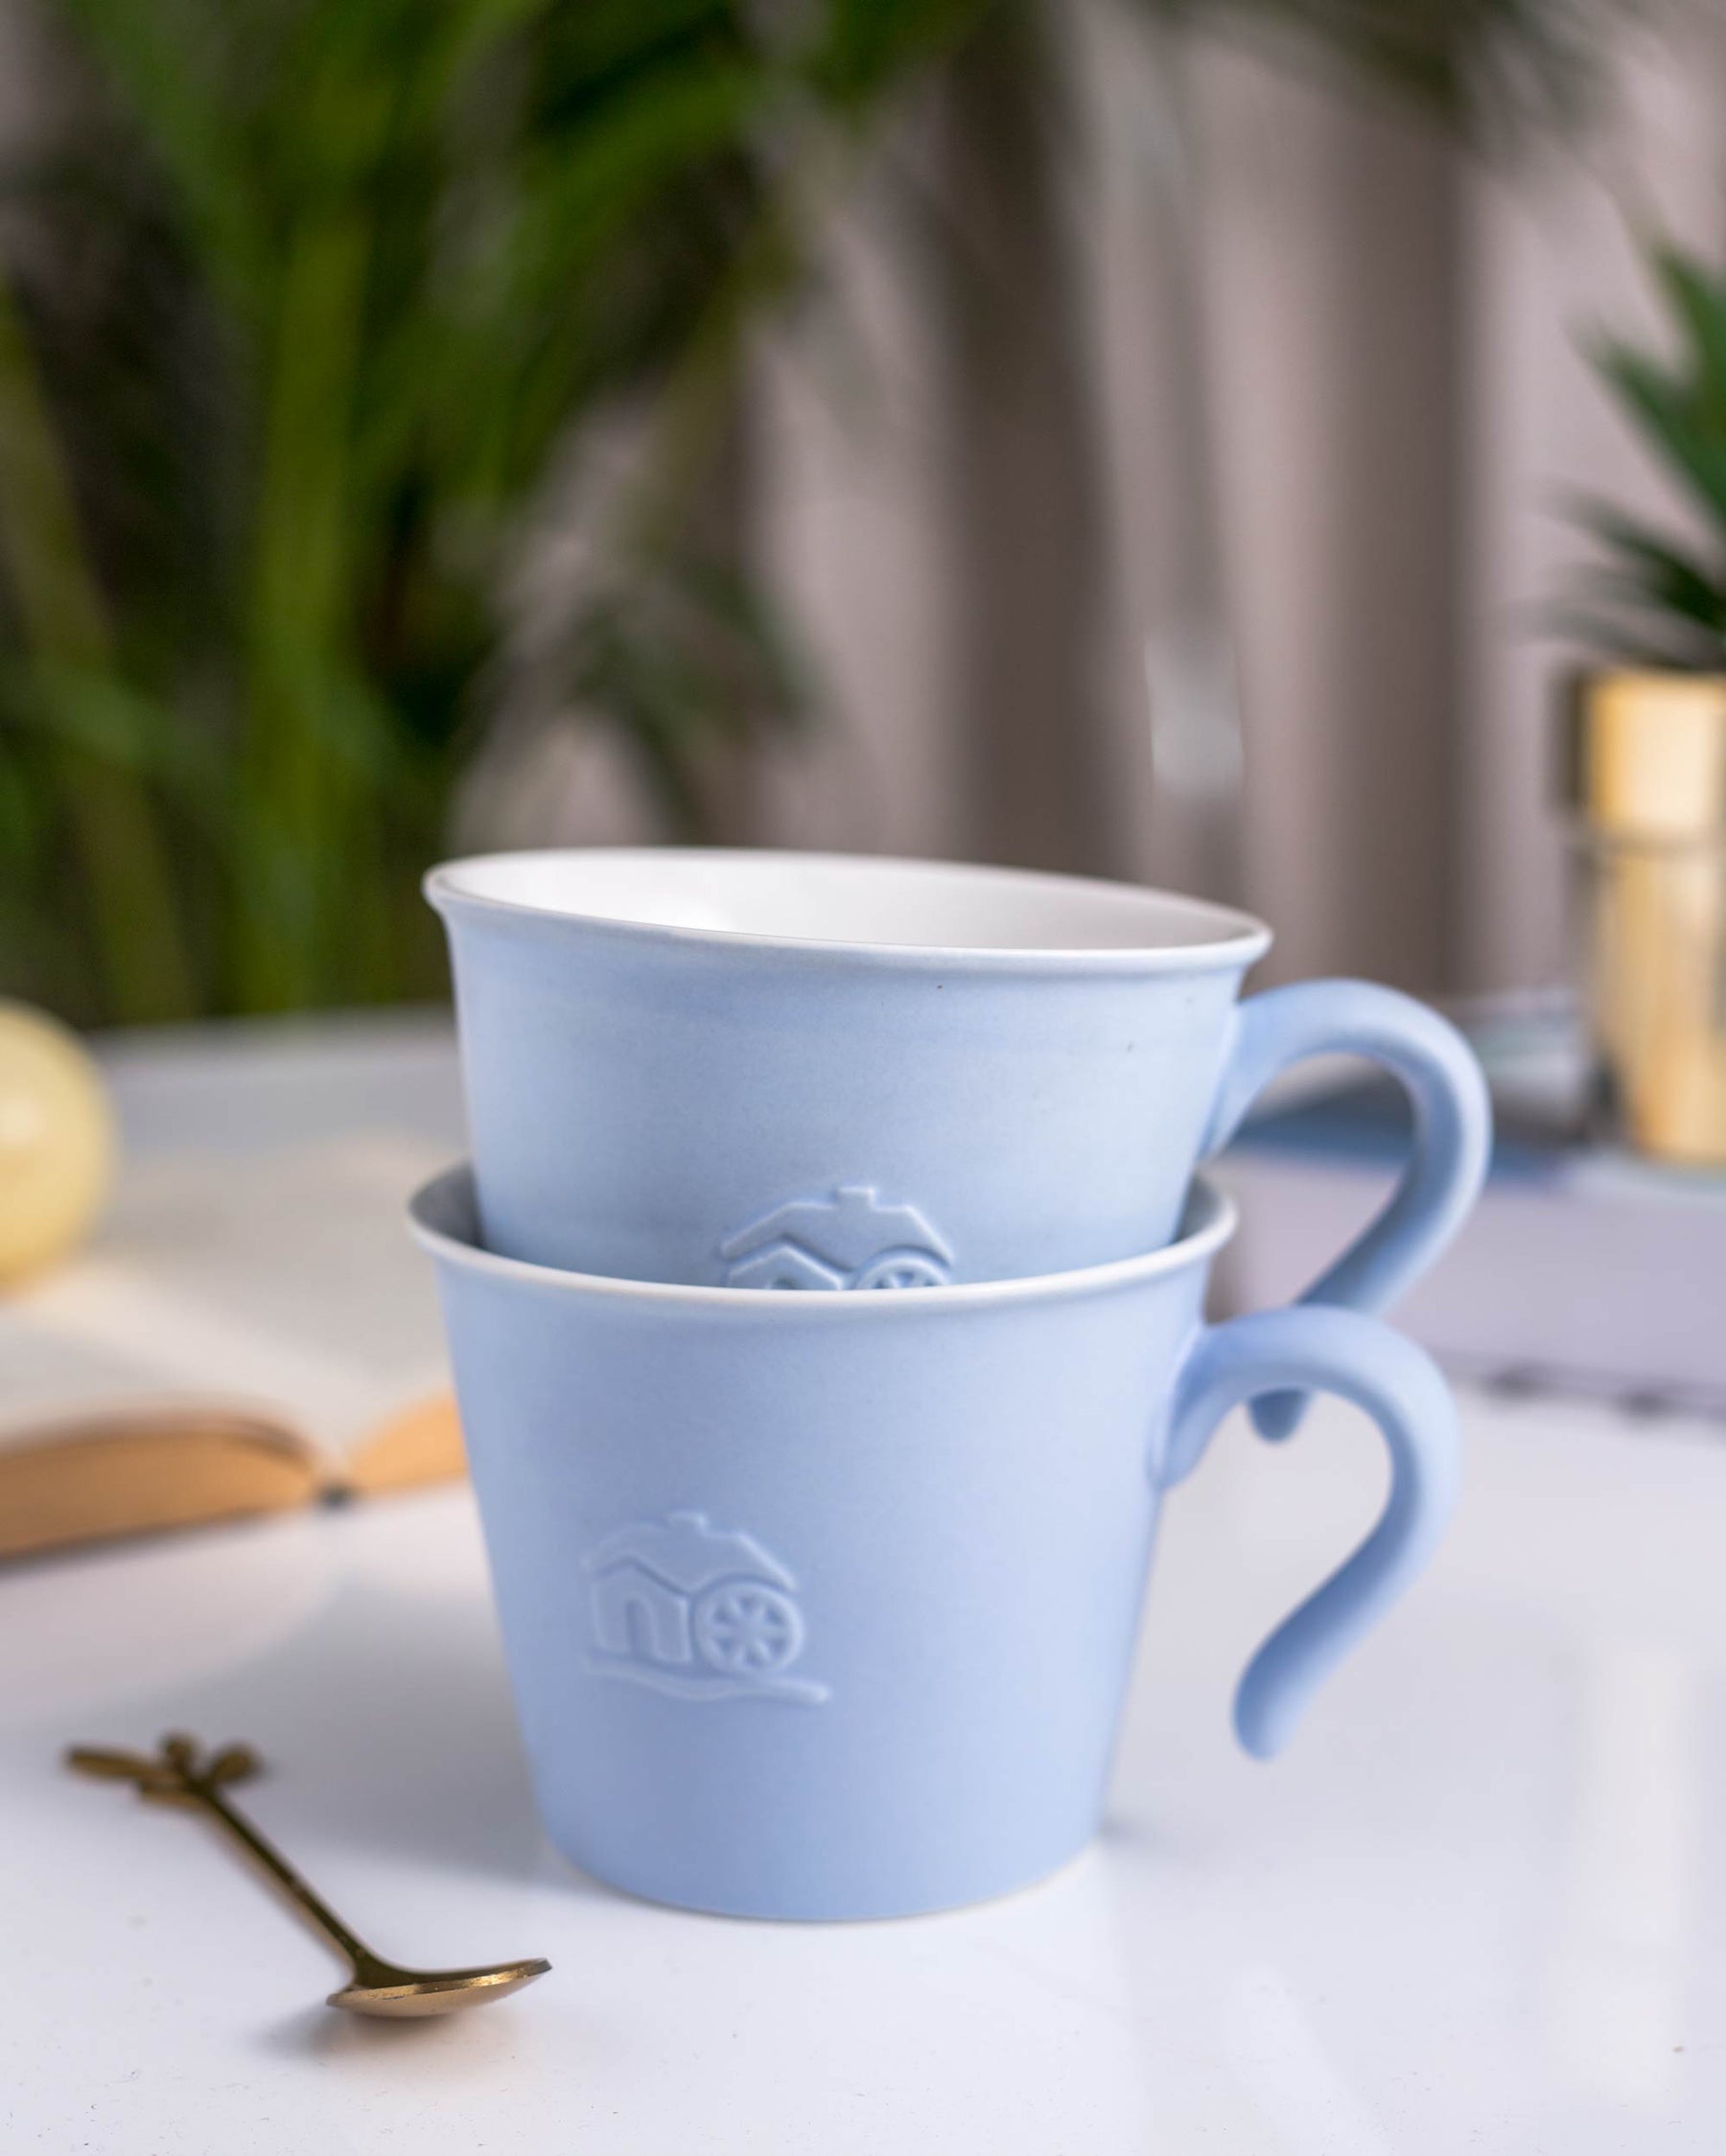 'Cerulean Comfort' Coffee Mug Set of 2